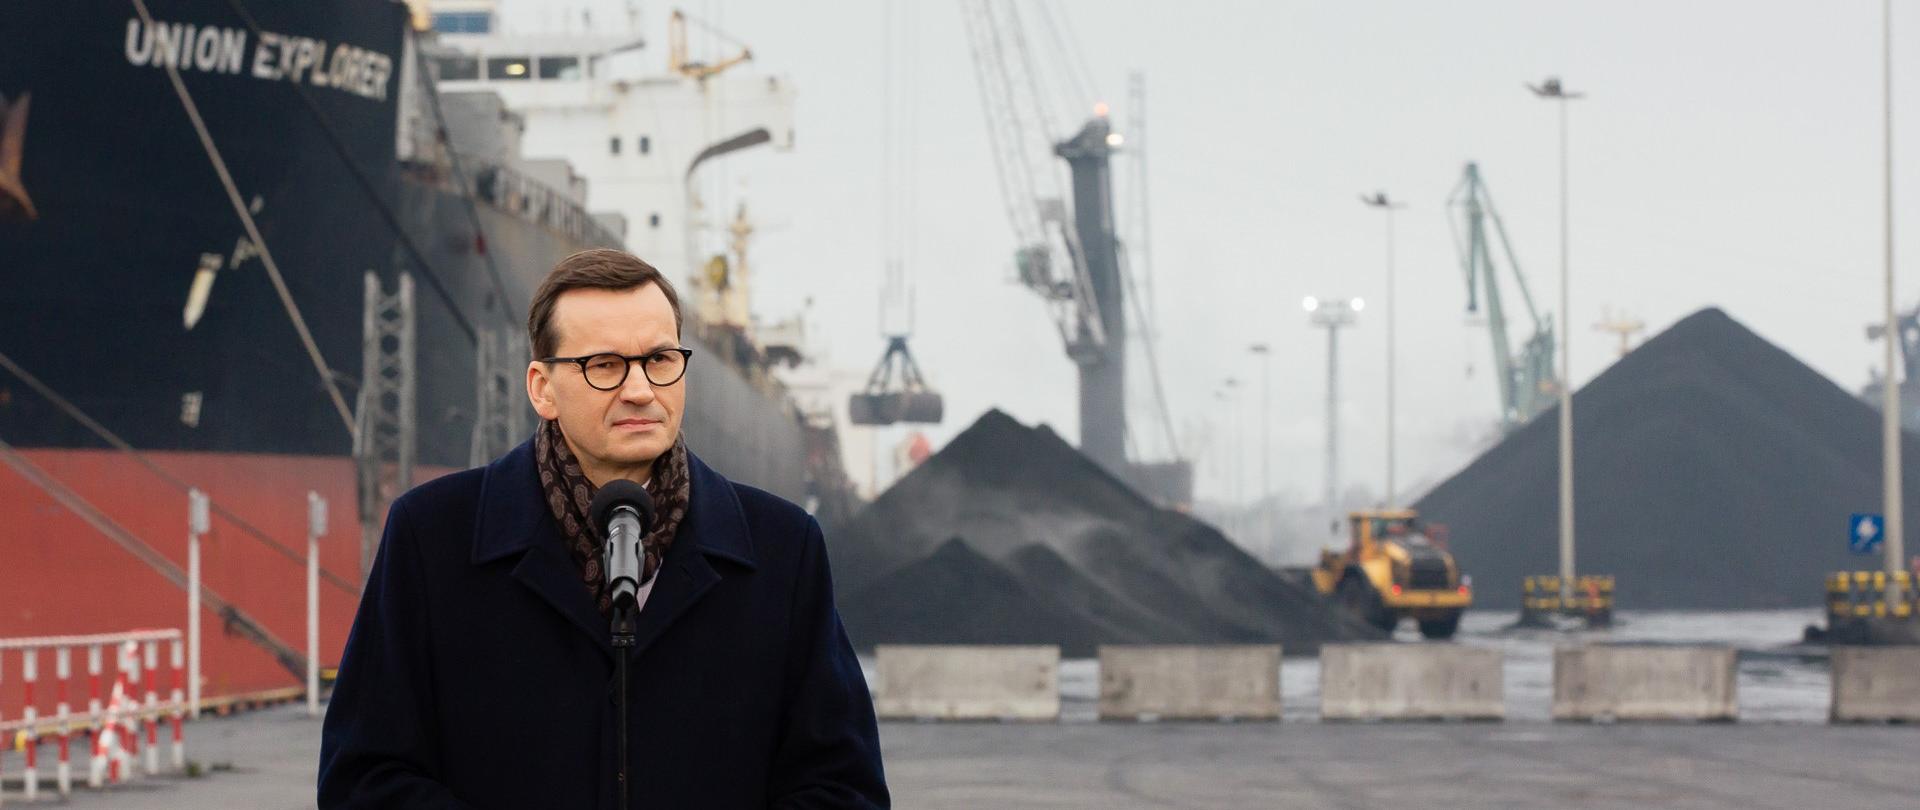 Premier w Porcie Gdańskim o rządowych rozwiązaniach dla gmin i mieszkańców w kwestii dystrybucji węgla